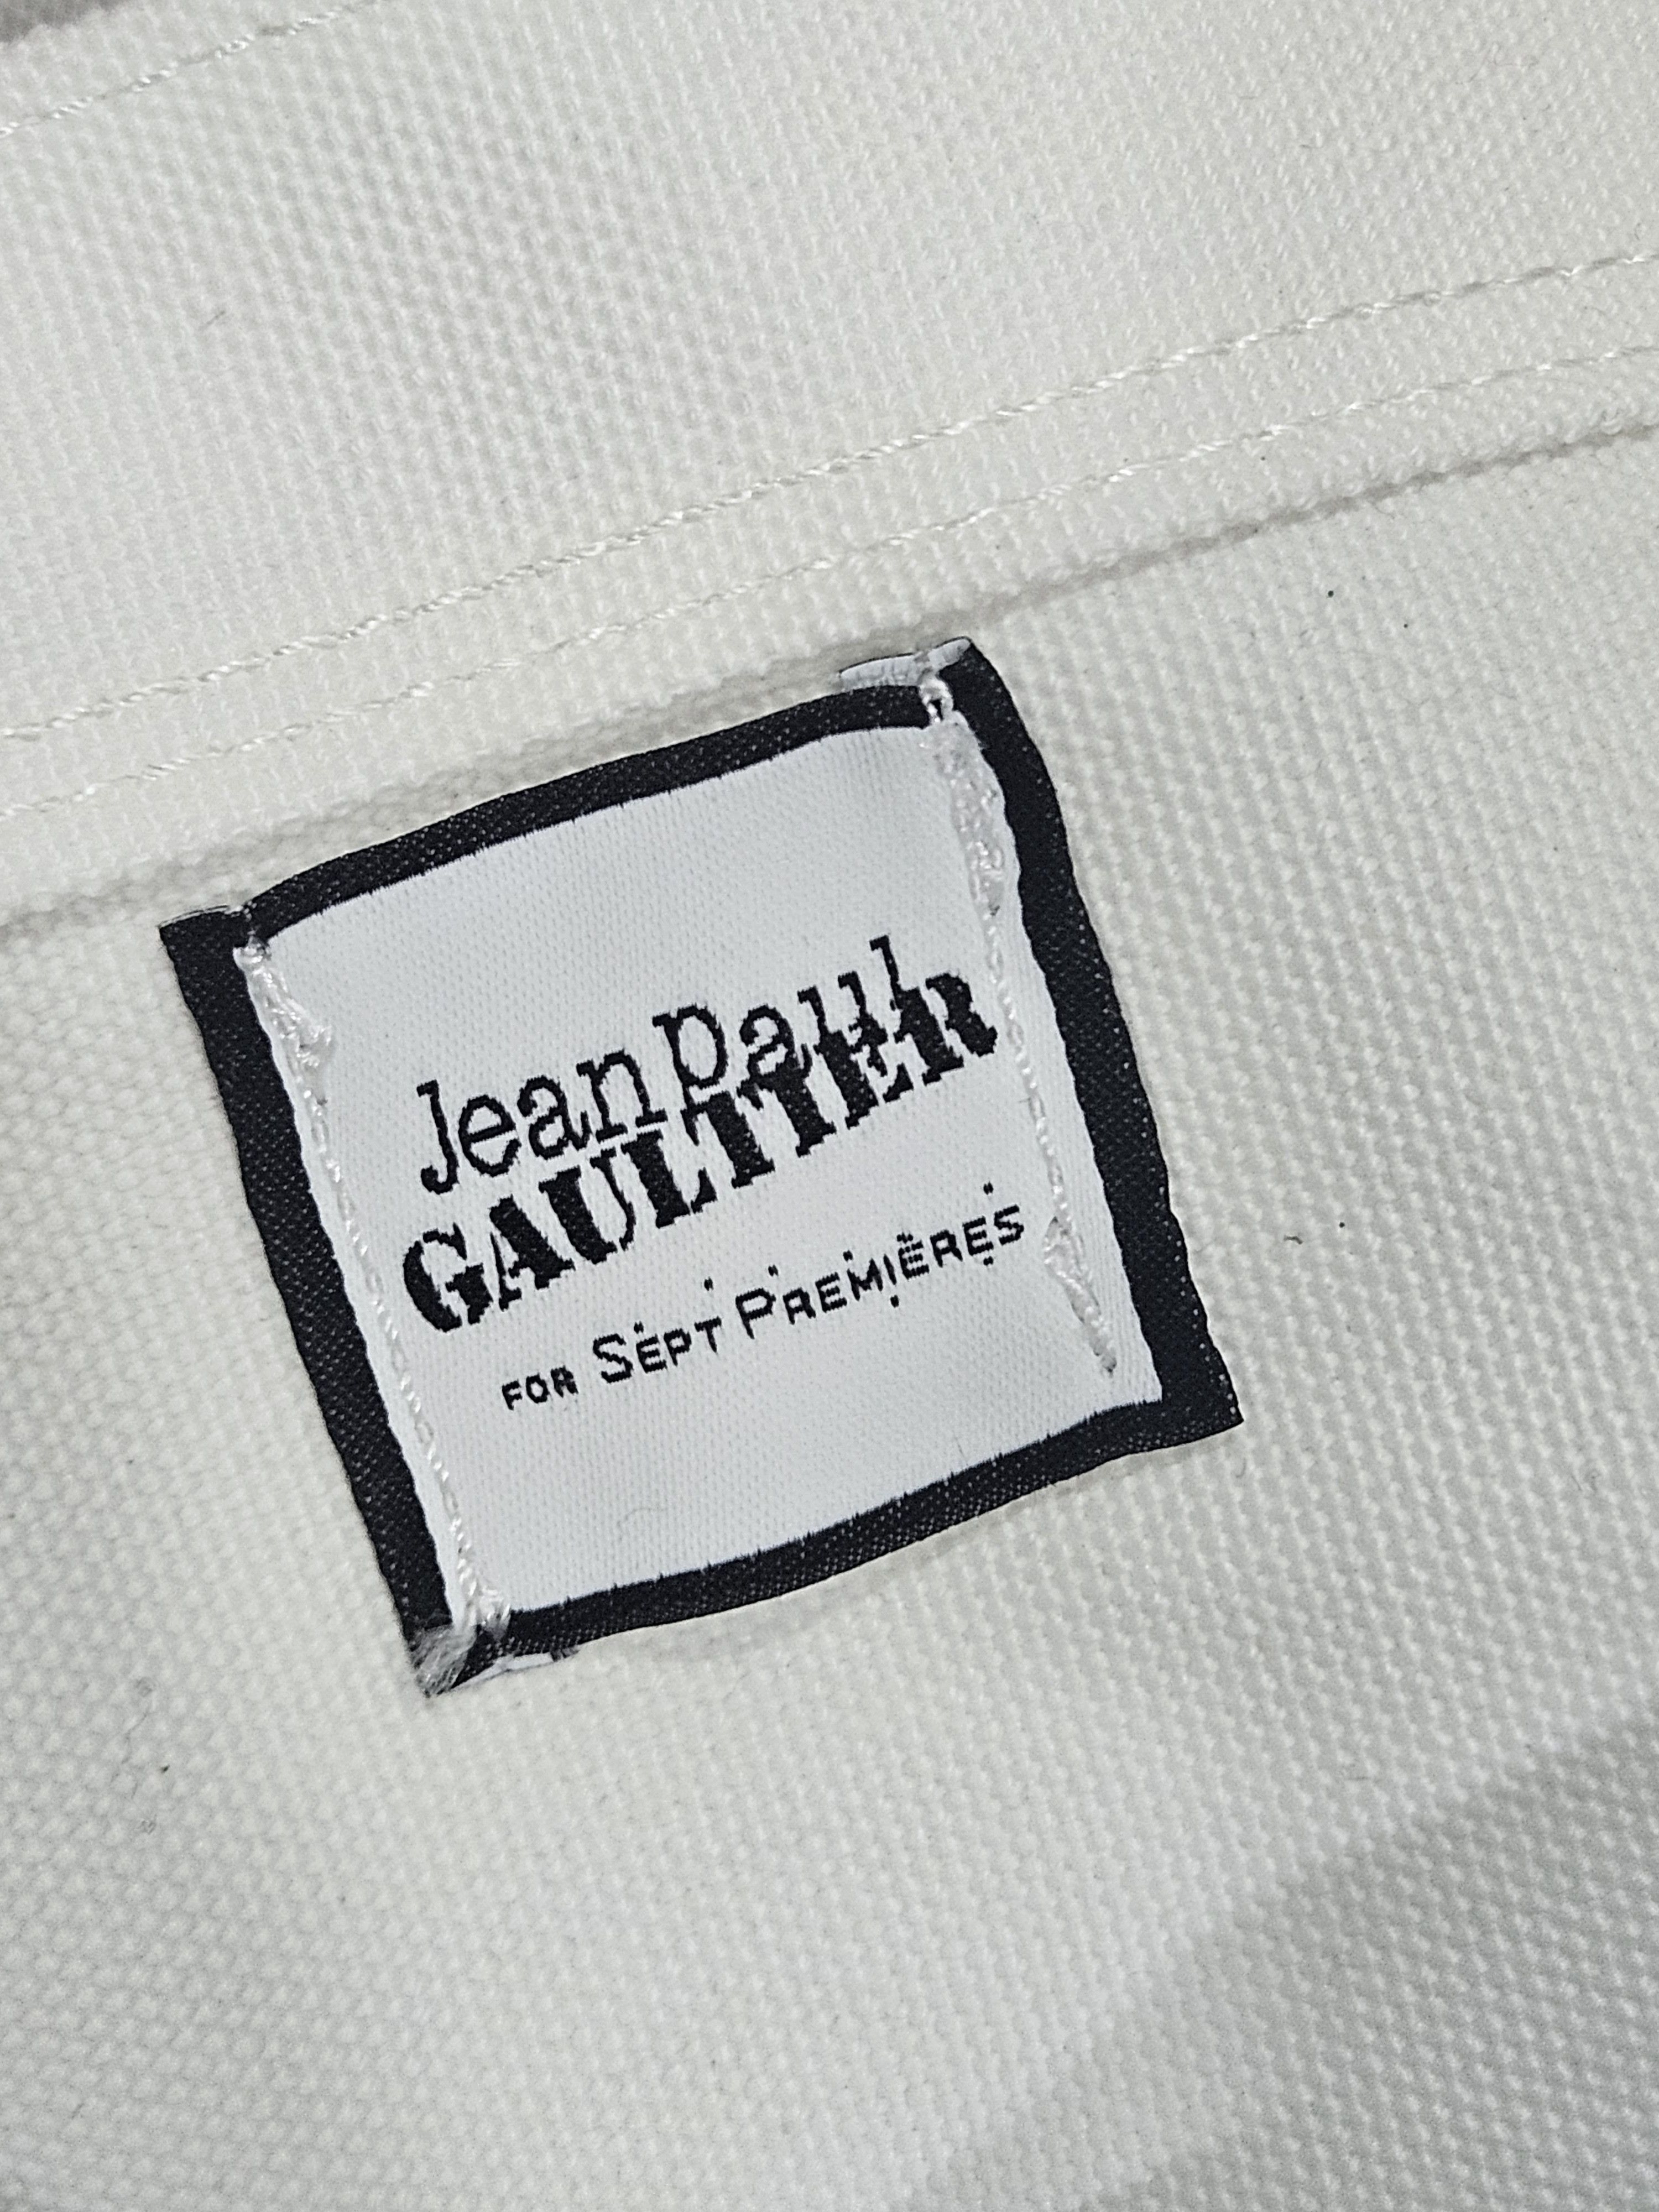 Jean Paul Gaultier for Sept. Premieres tote bag Paris Tokyo - 4